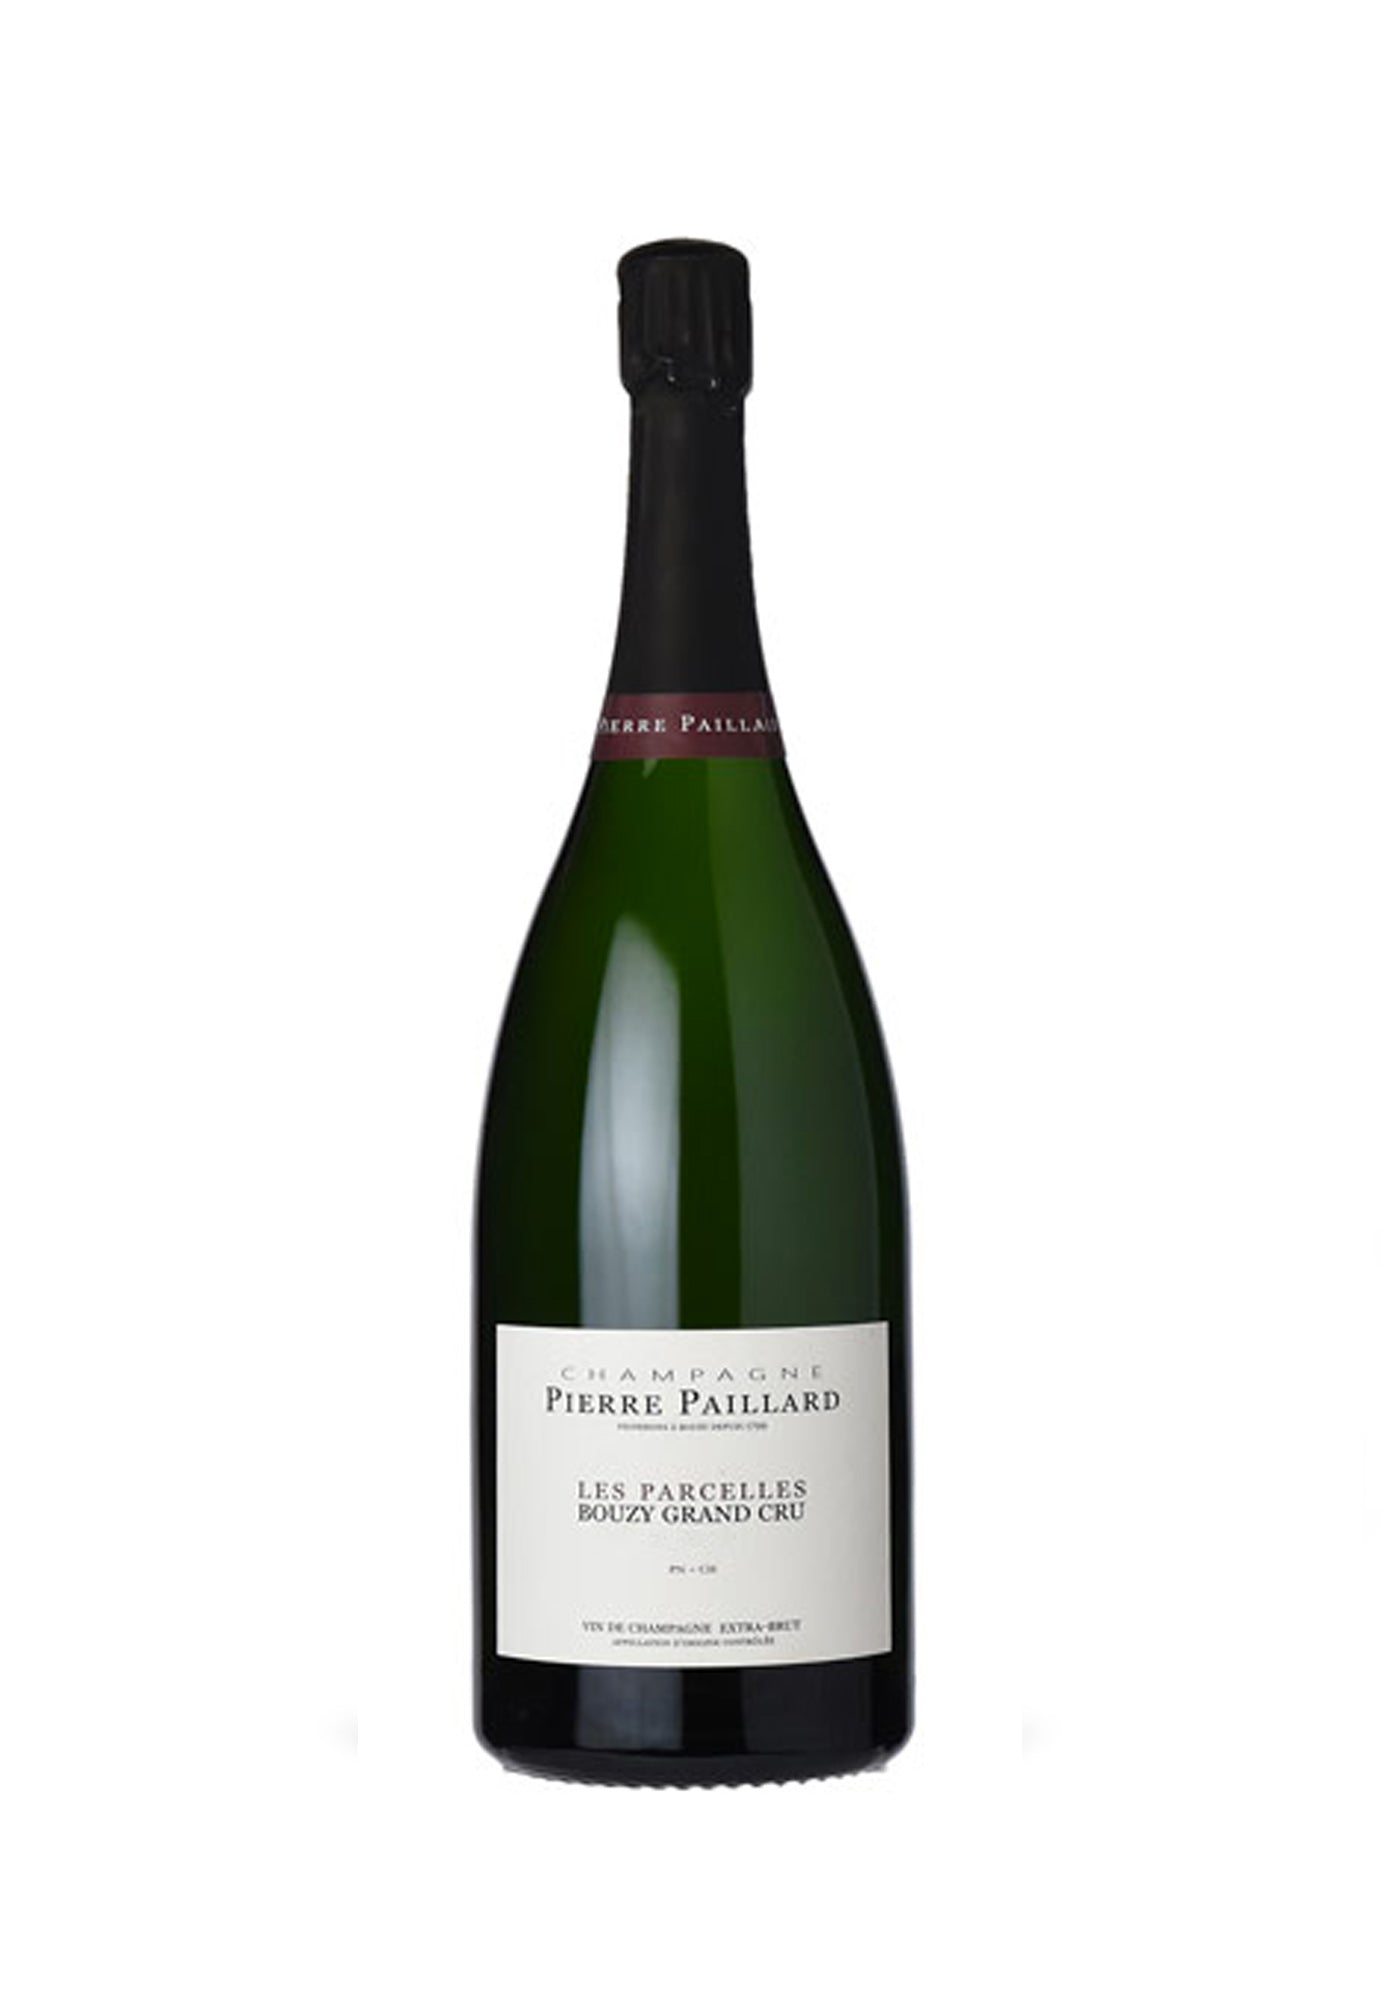 Pierre Paillard Brut Bouzy Grand Cru Les Parcelles '17th Edition' - 1.5 ...